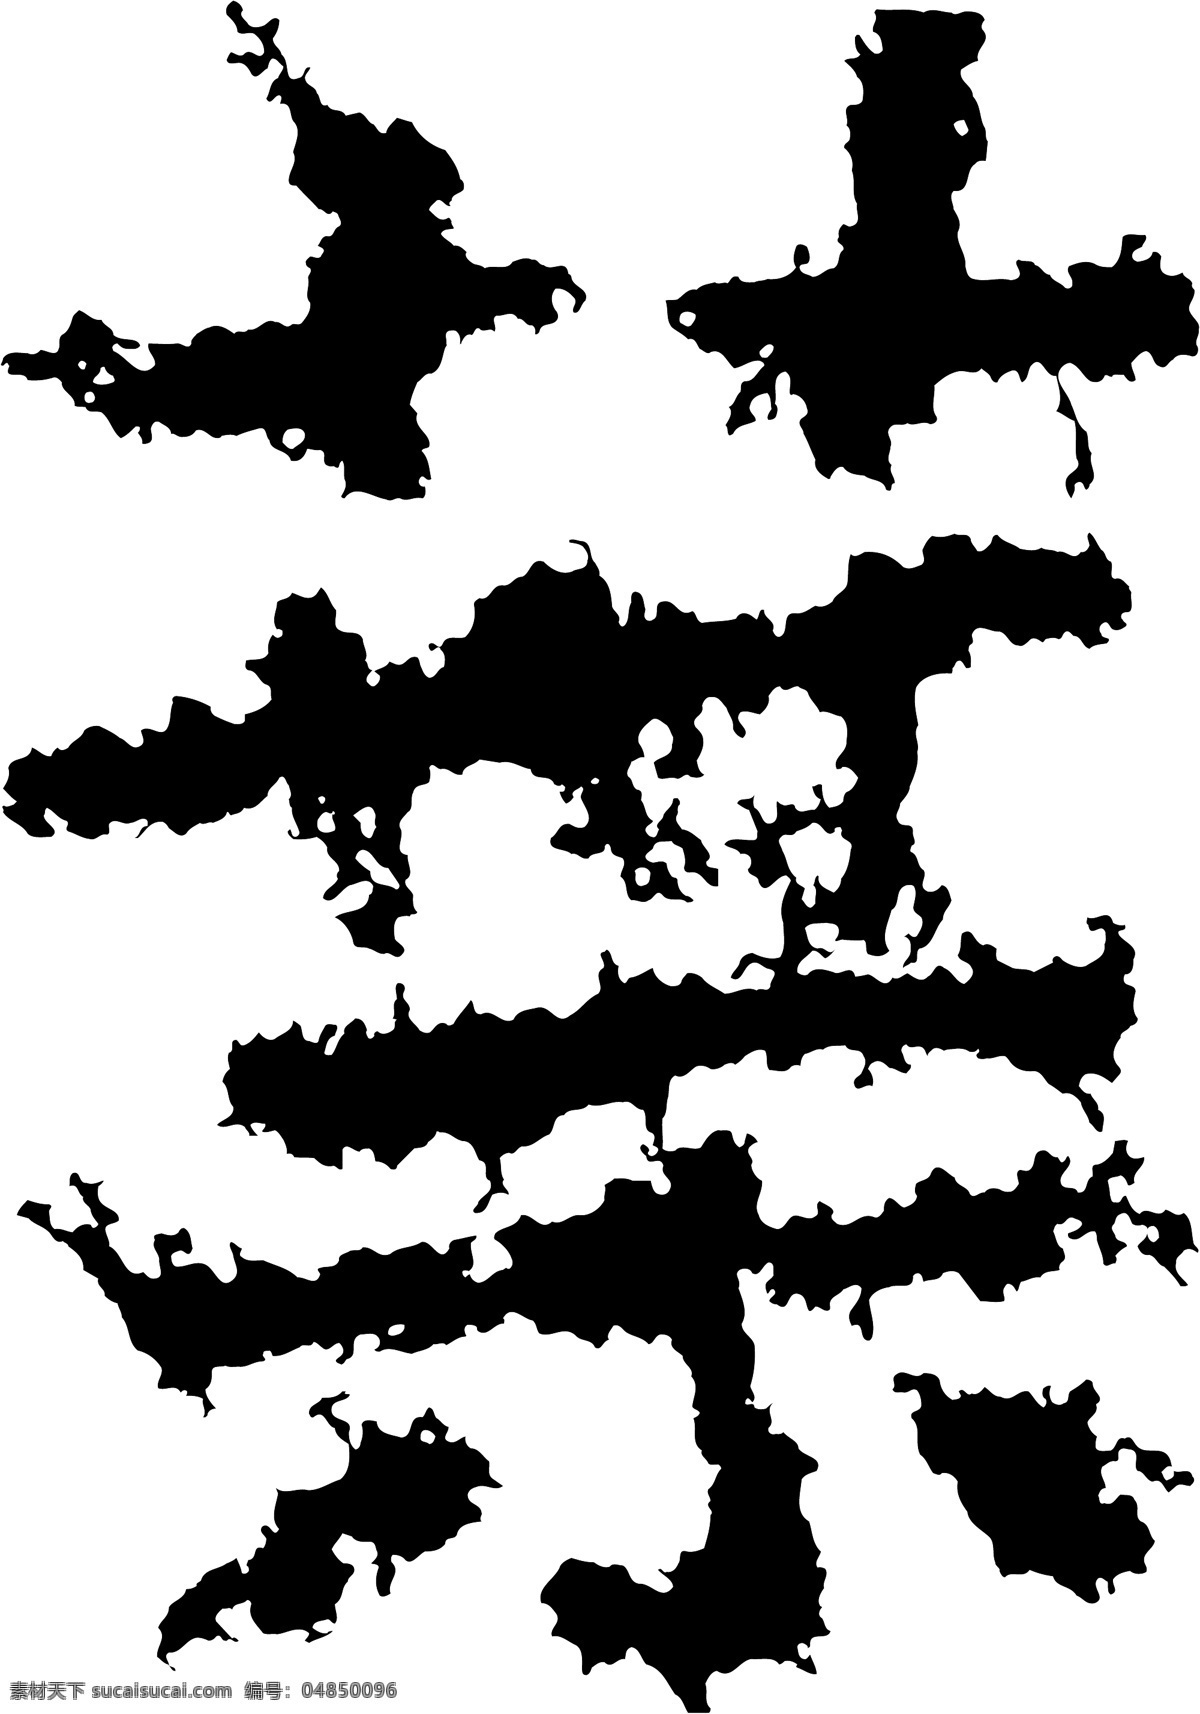 葉叶 书法 汉字 十三画 传统艺术 矢量 格式 ai格式 设计素材 十三画字 瀚墨宝典 矢量图库 白色